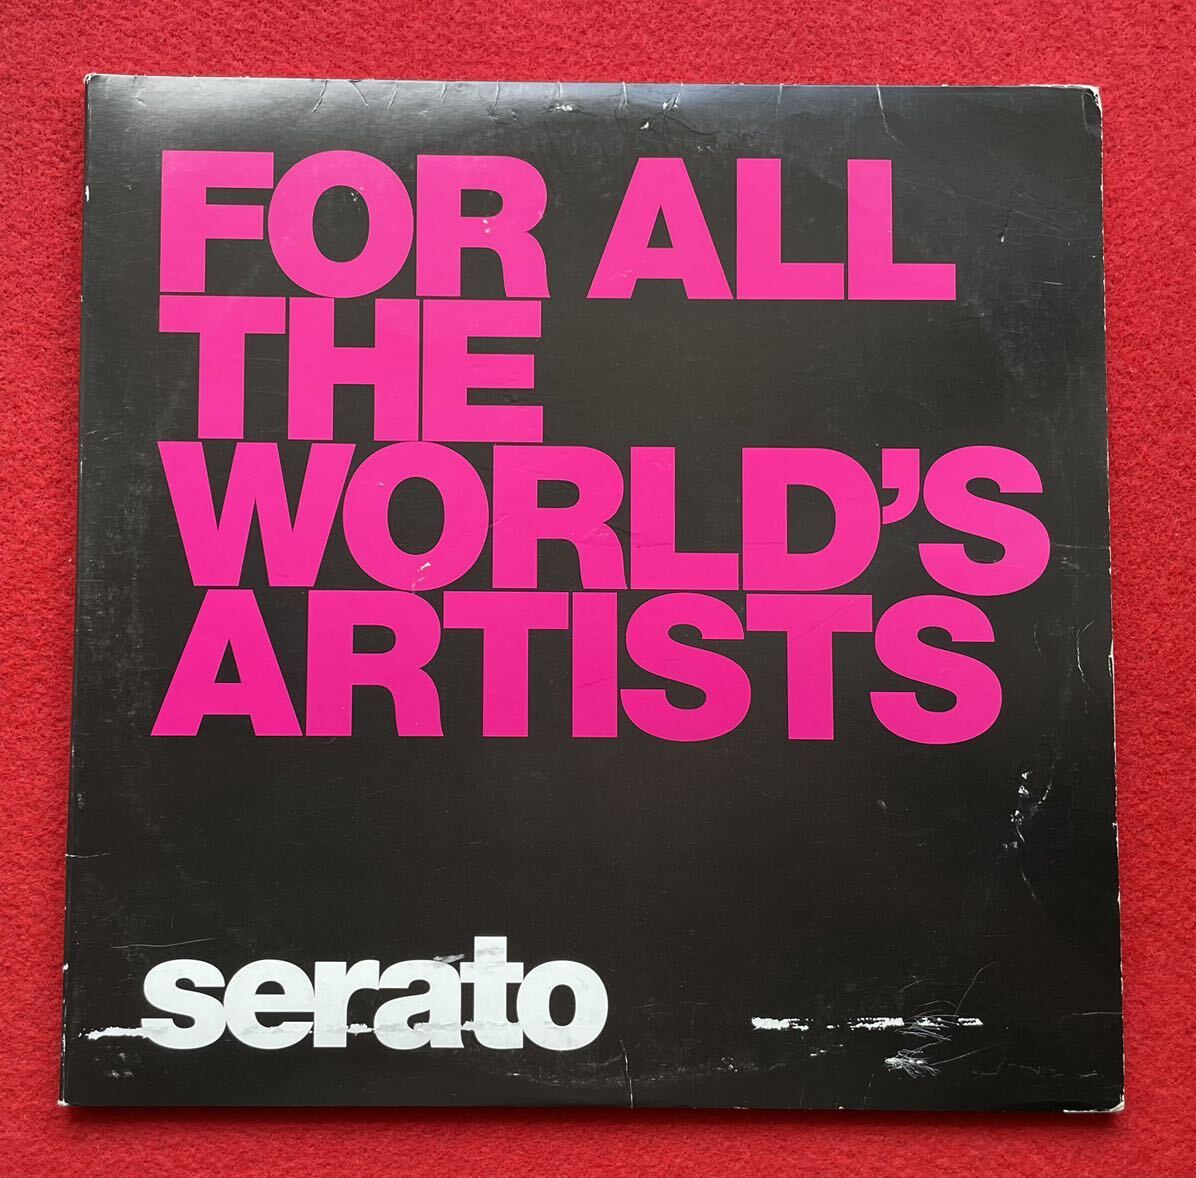 SERATO 赤バイナル2枚組 Serato Control Vinyl 12 12inch盤その他にもプロモーション盤 レア盤 人気レコード 多数出品。_画像1